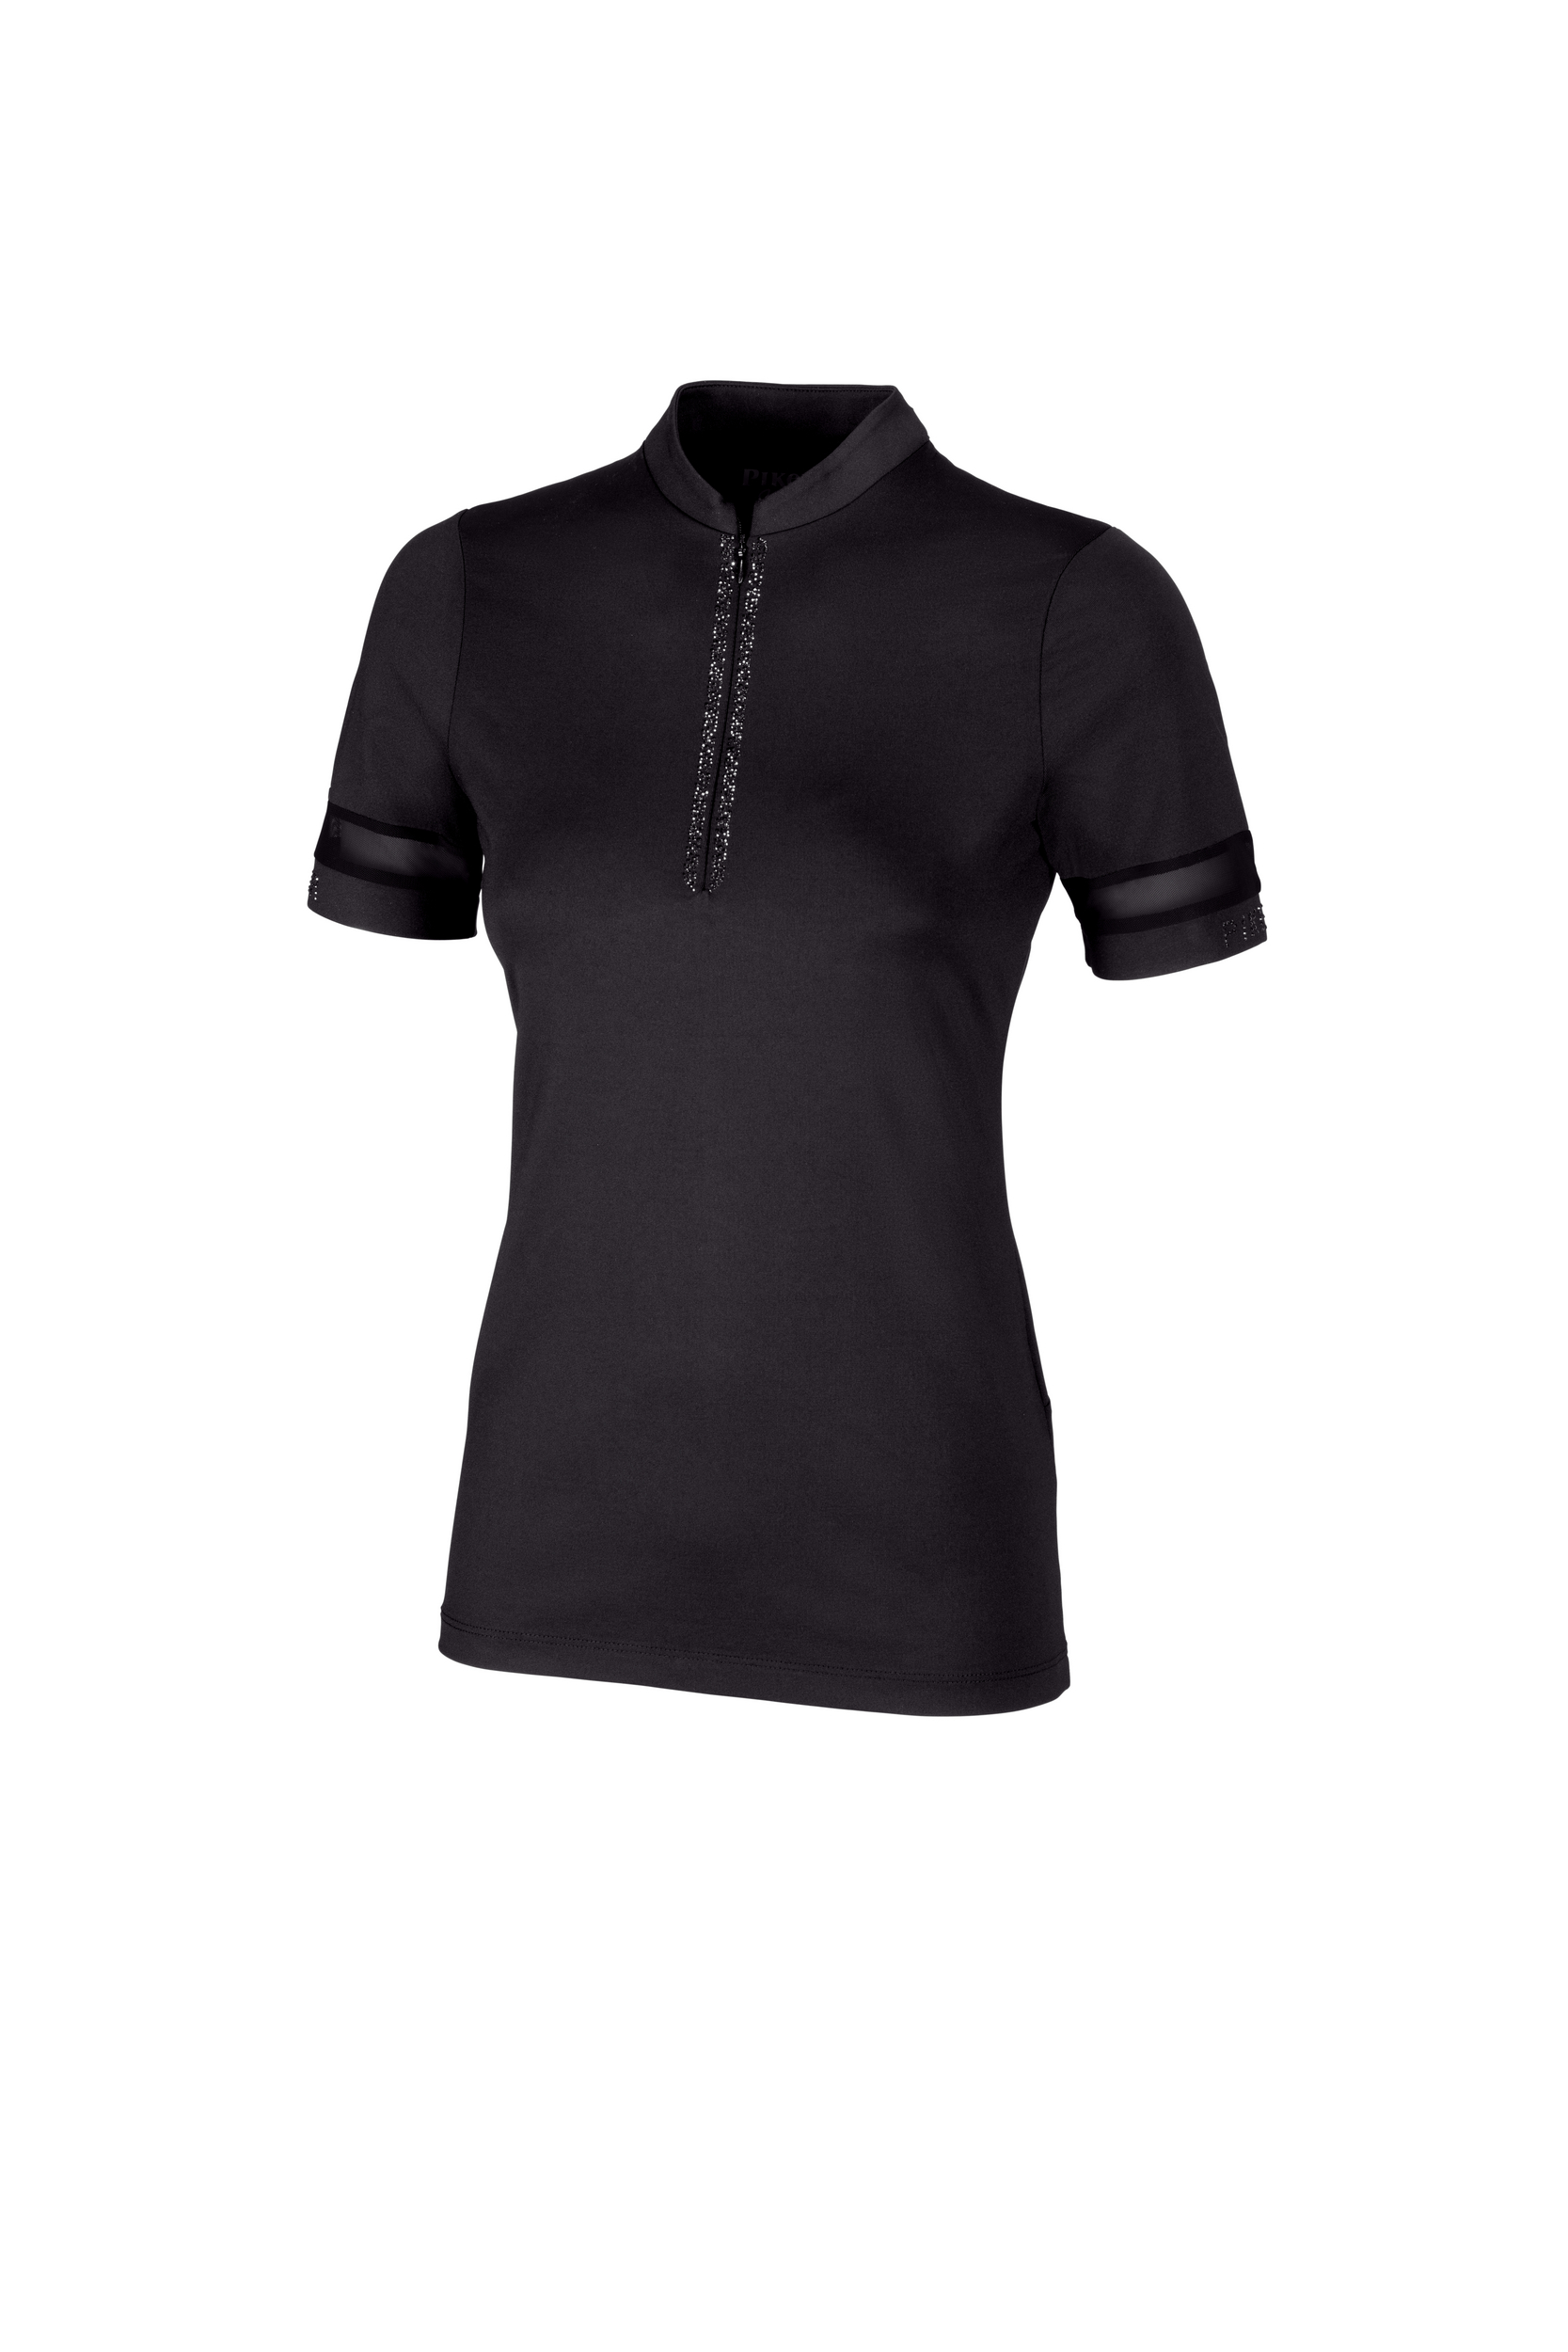 PIKEUR Damen Zip Shirt Kurzarm 5210 Selection 24 - black - 36 - 3